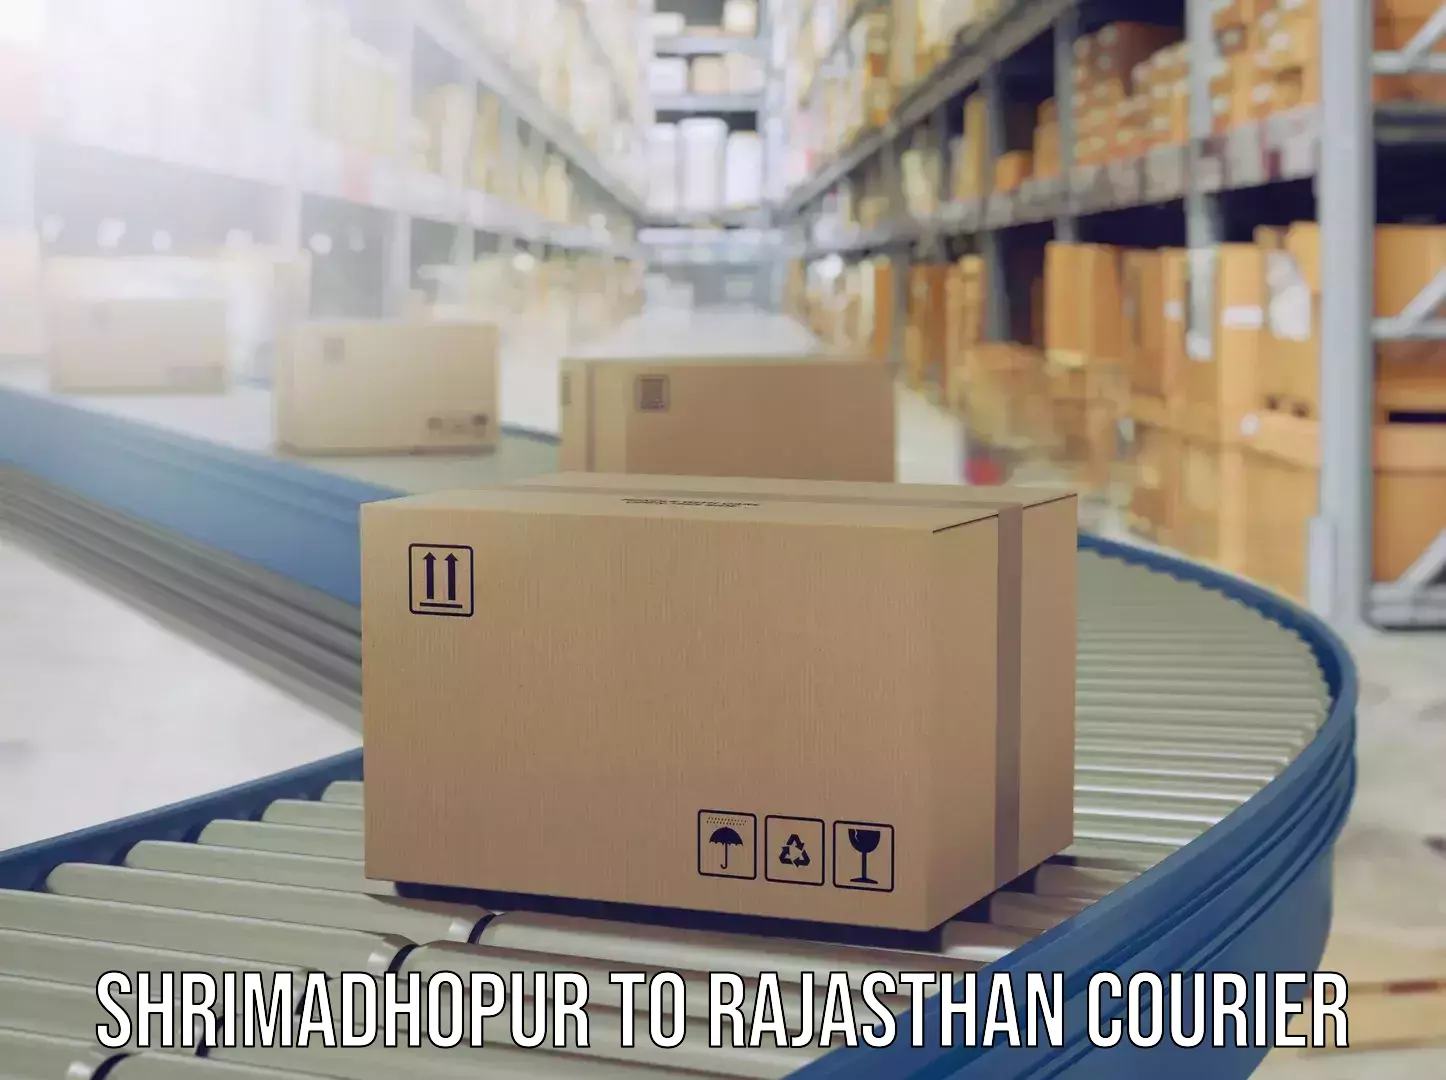 Luggage shipping service Shrimadhopur to Mathania